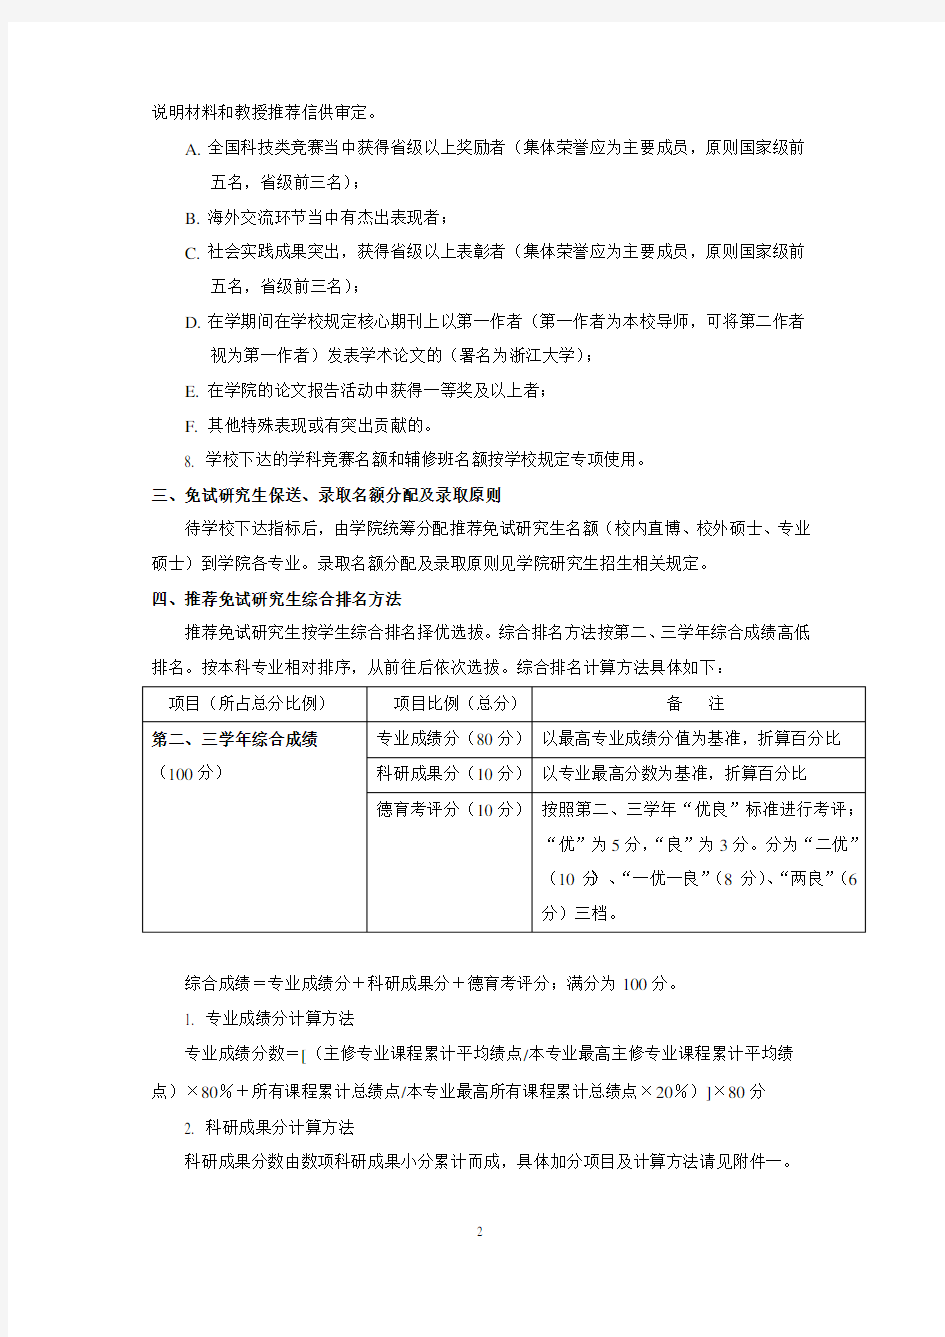 浙江大学管理学院关于推荐免试研究生有关事项的规定